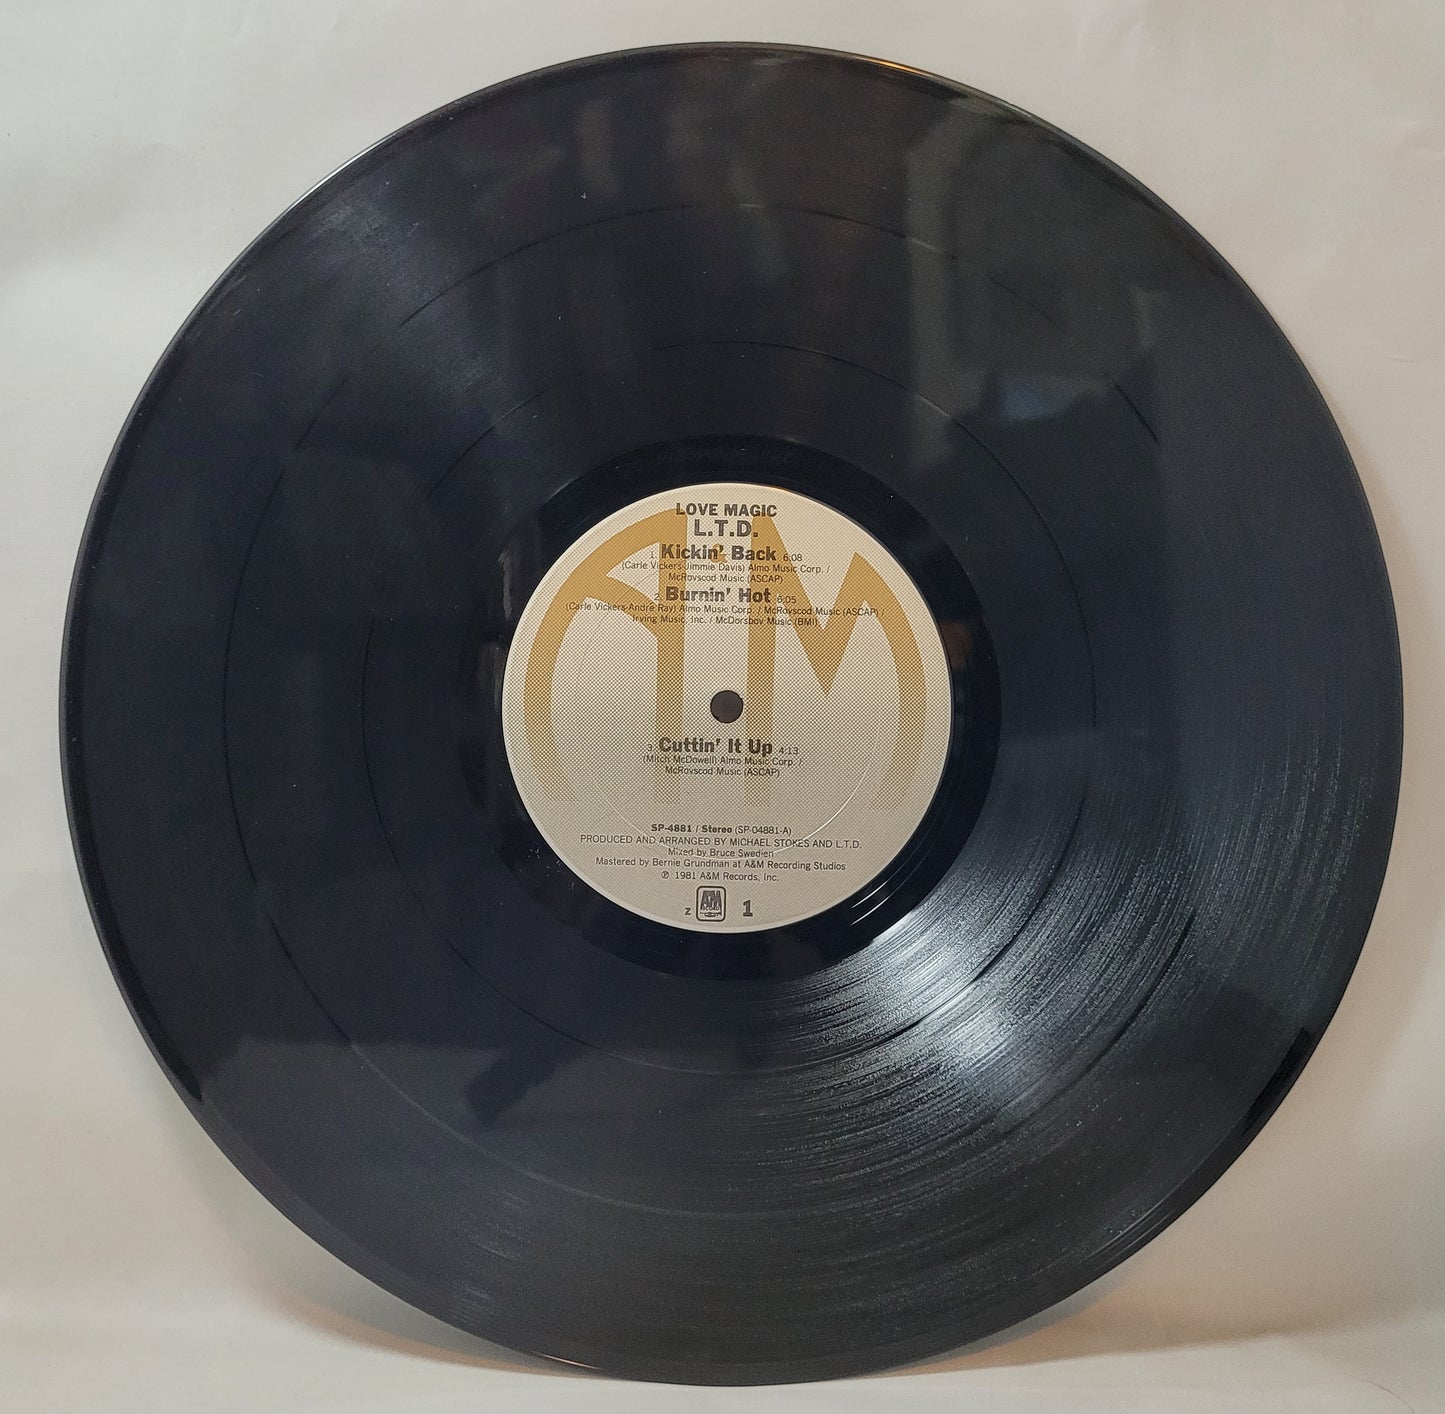 L.T.D. - Love Magic [Vinyl Record LP]